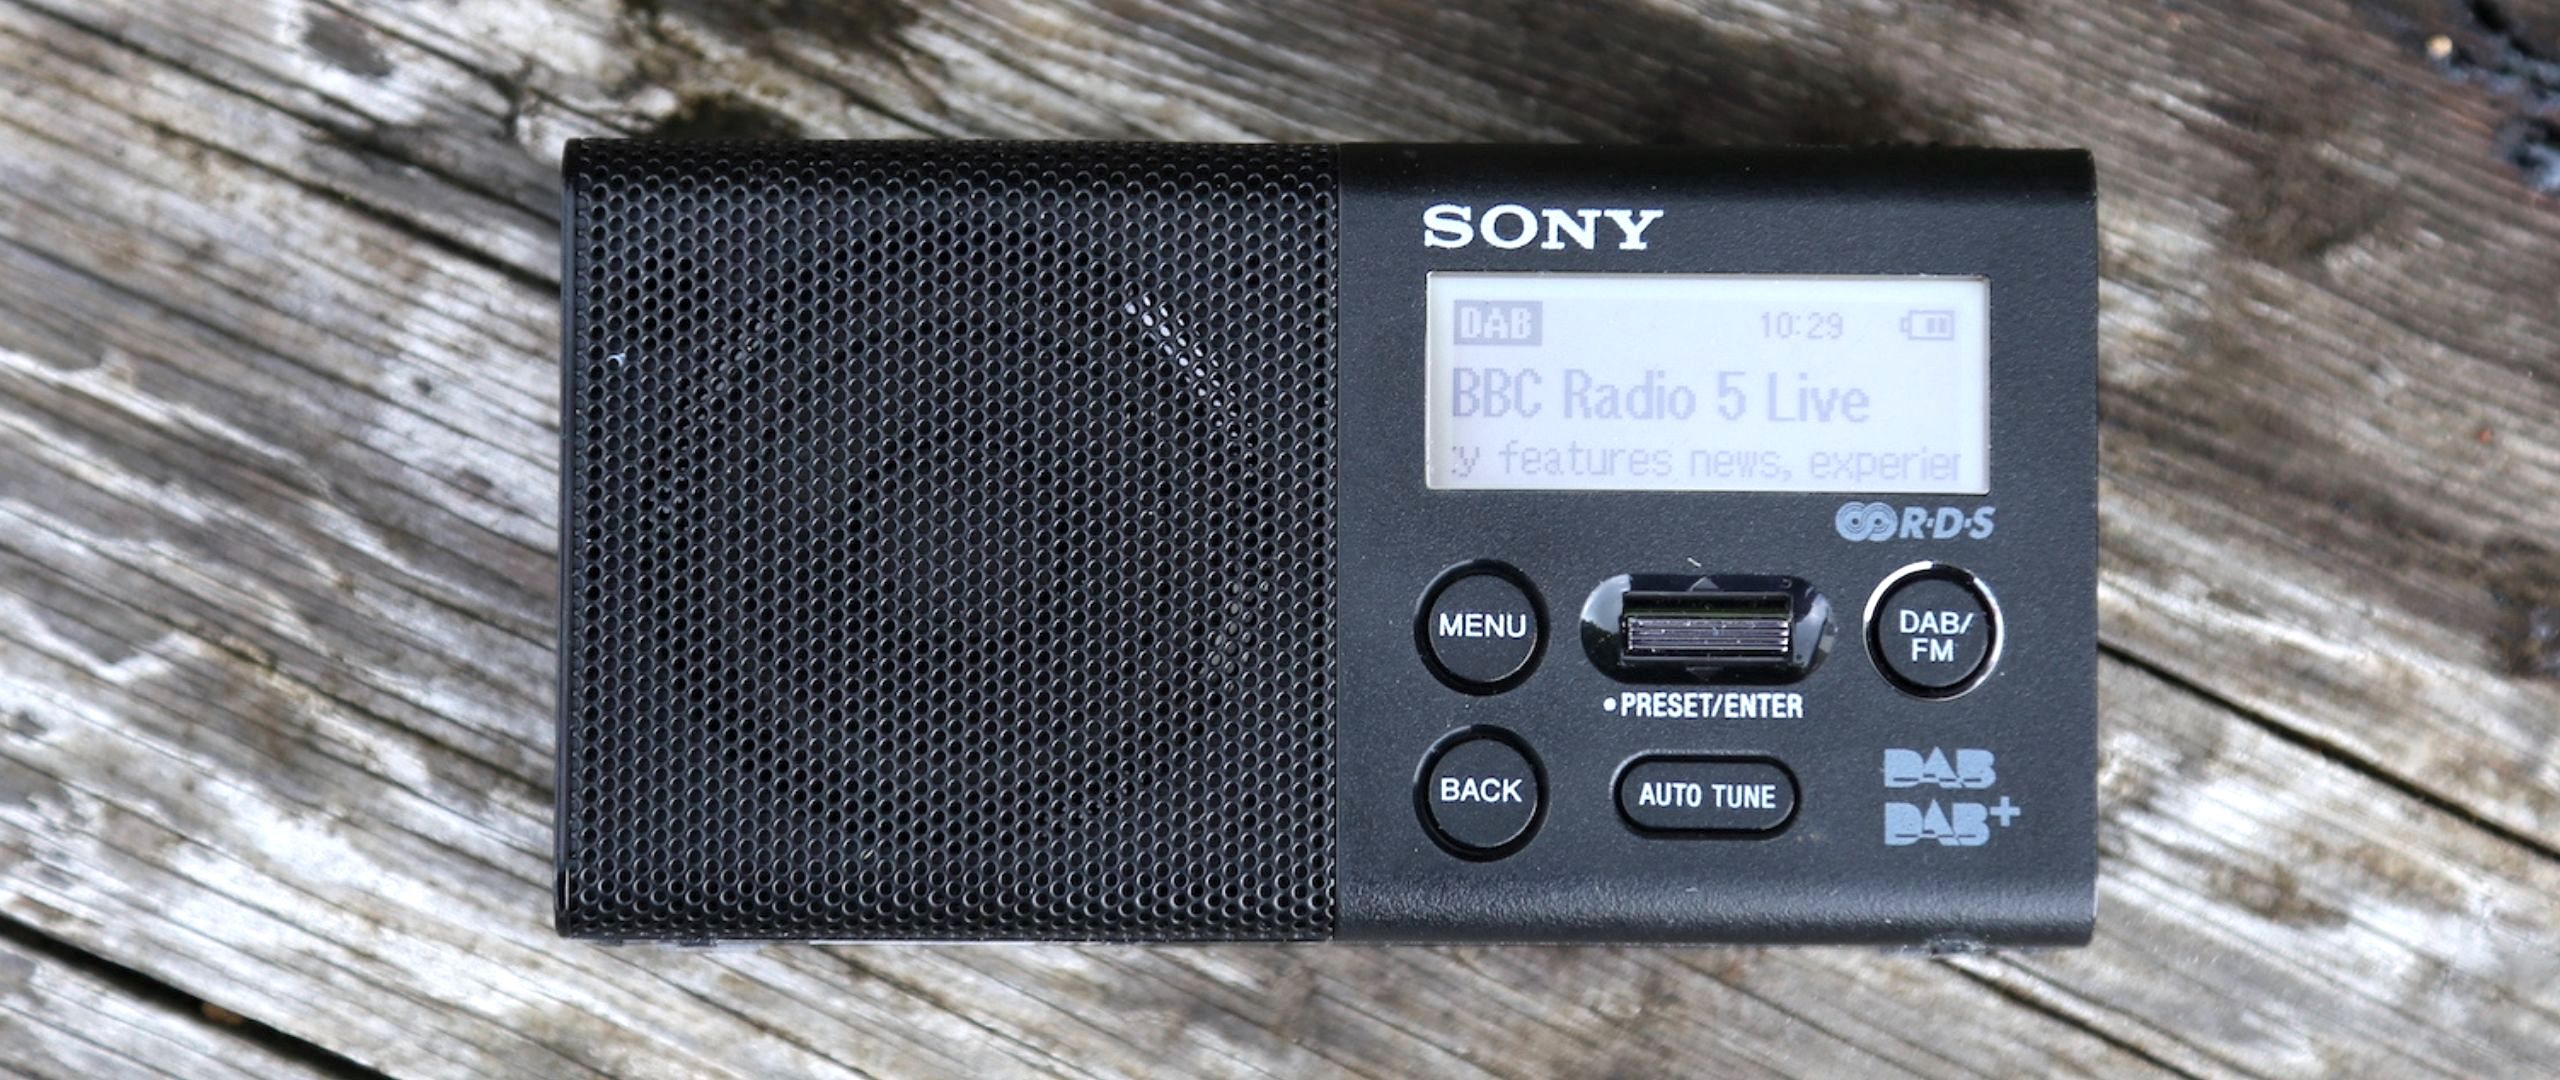 been Maak plaats Gemeenten Sony XDR-P1 DAB radio review | TechRadar